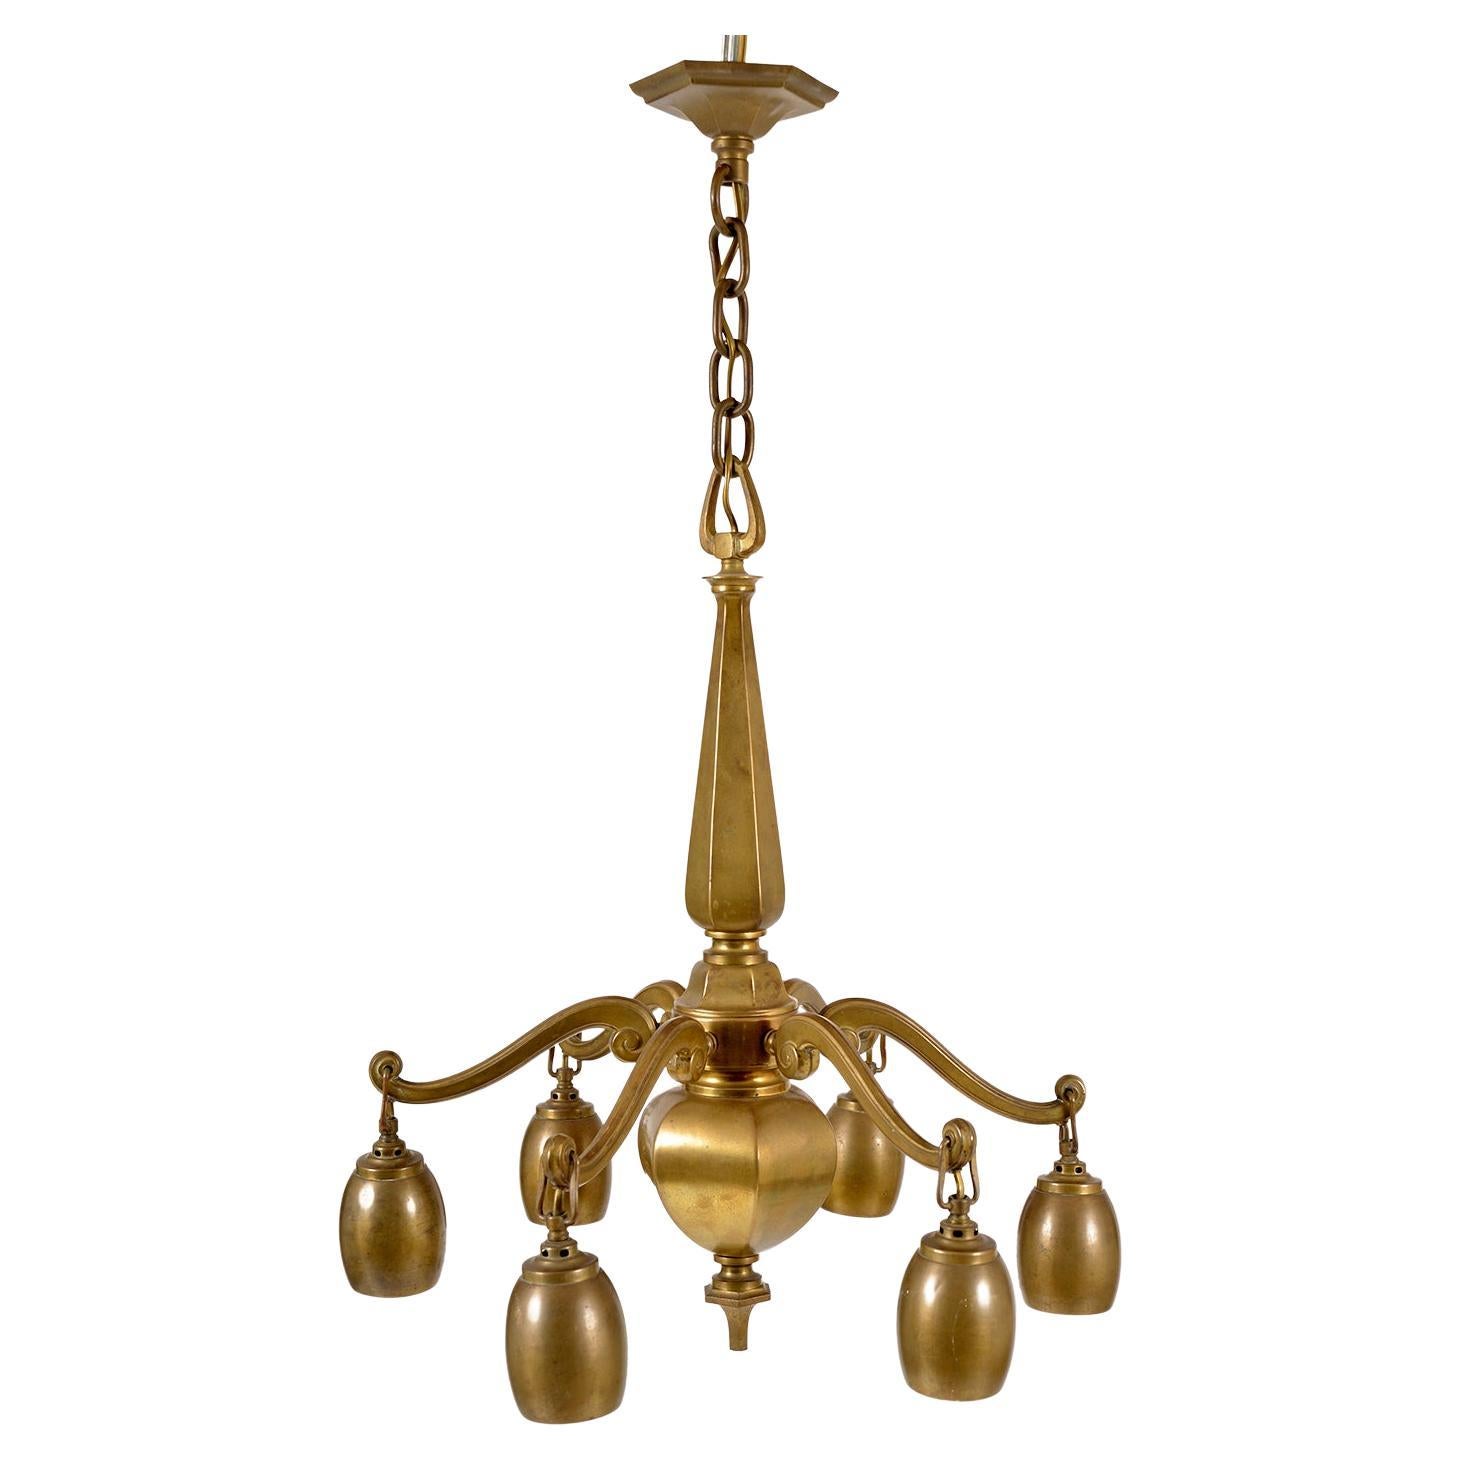 1920s Bohemian Art Deco Jugendstil Solid Brass 6-Arm Ceiling Pendant Chandelier For Sale